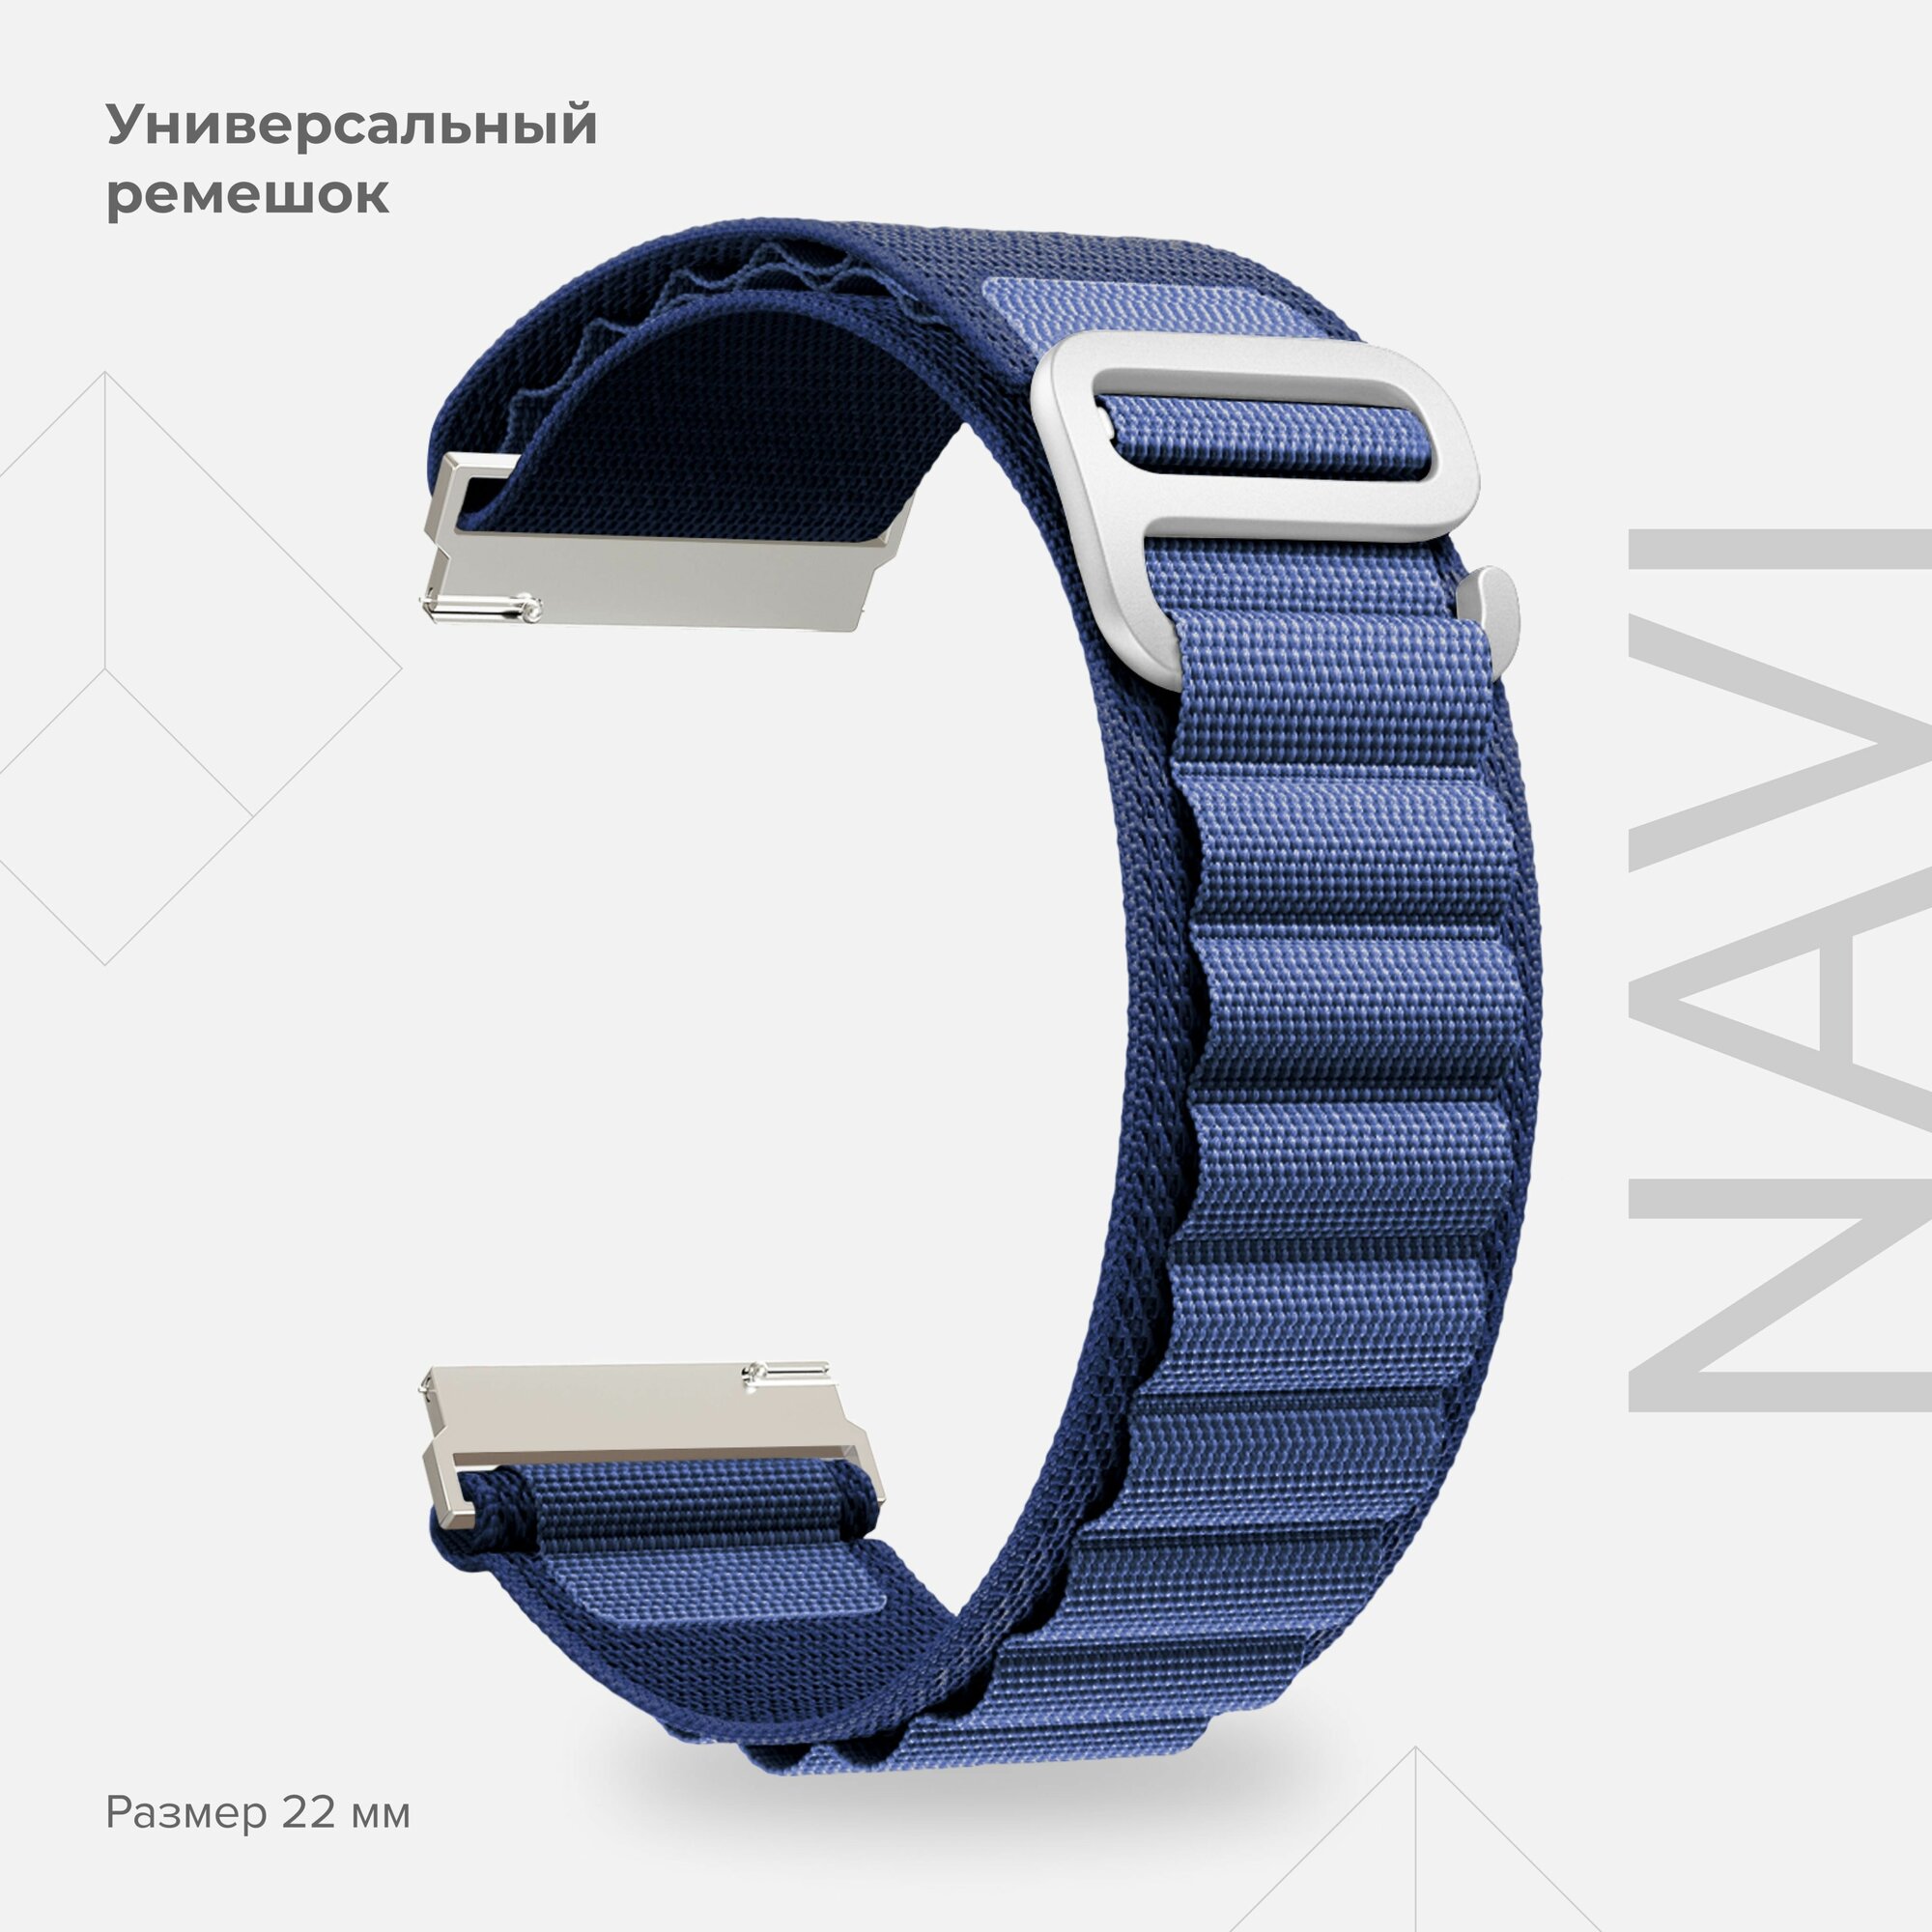 Универсальный петлевой нейлоновый ремешок для часов 22 mm LYAMBDA NAVI DSN-19-22-BL для часов Garmin, Samsung, Huawei, LG, Rolex, Honor, синий